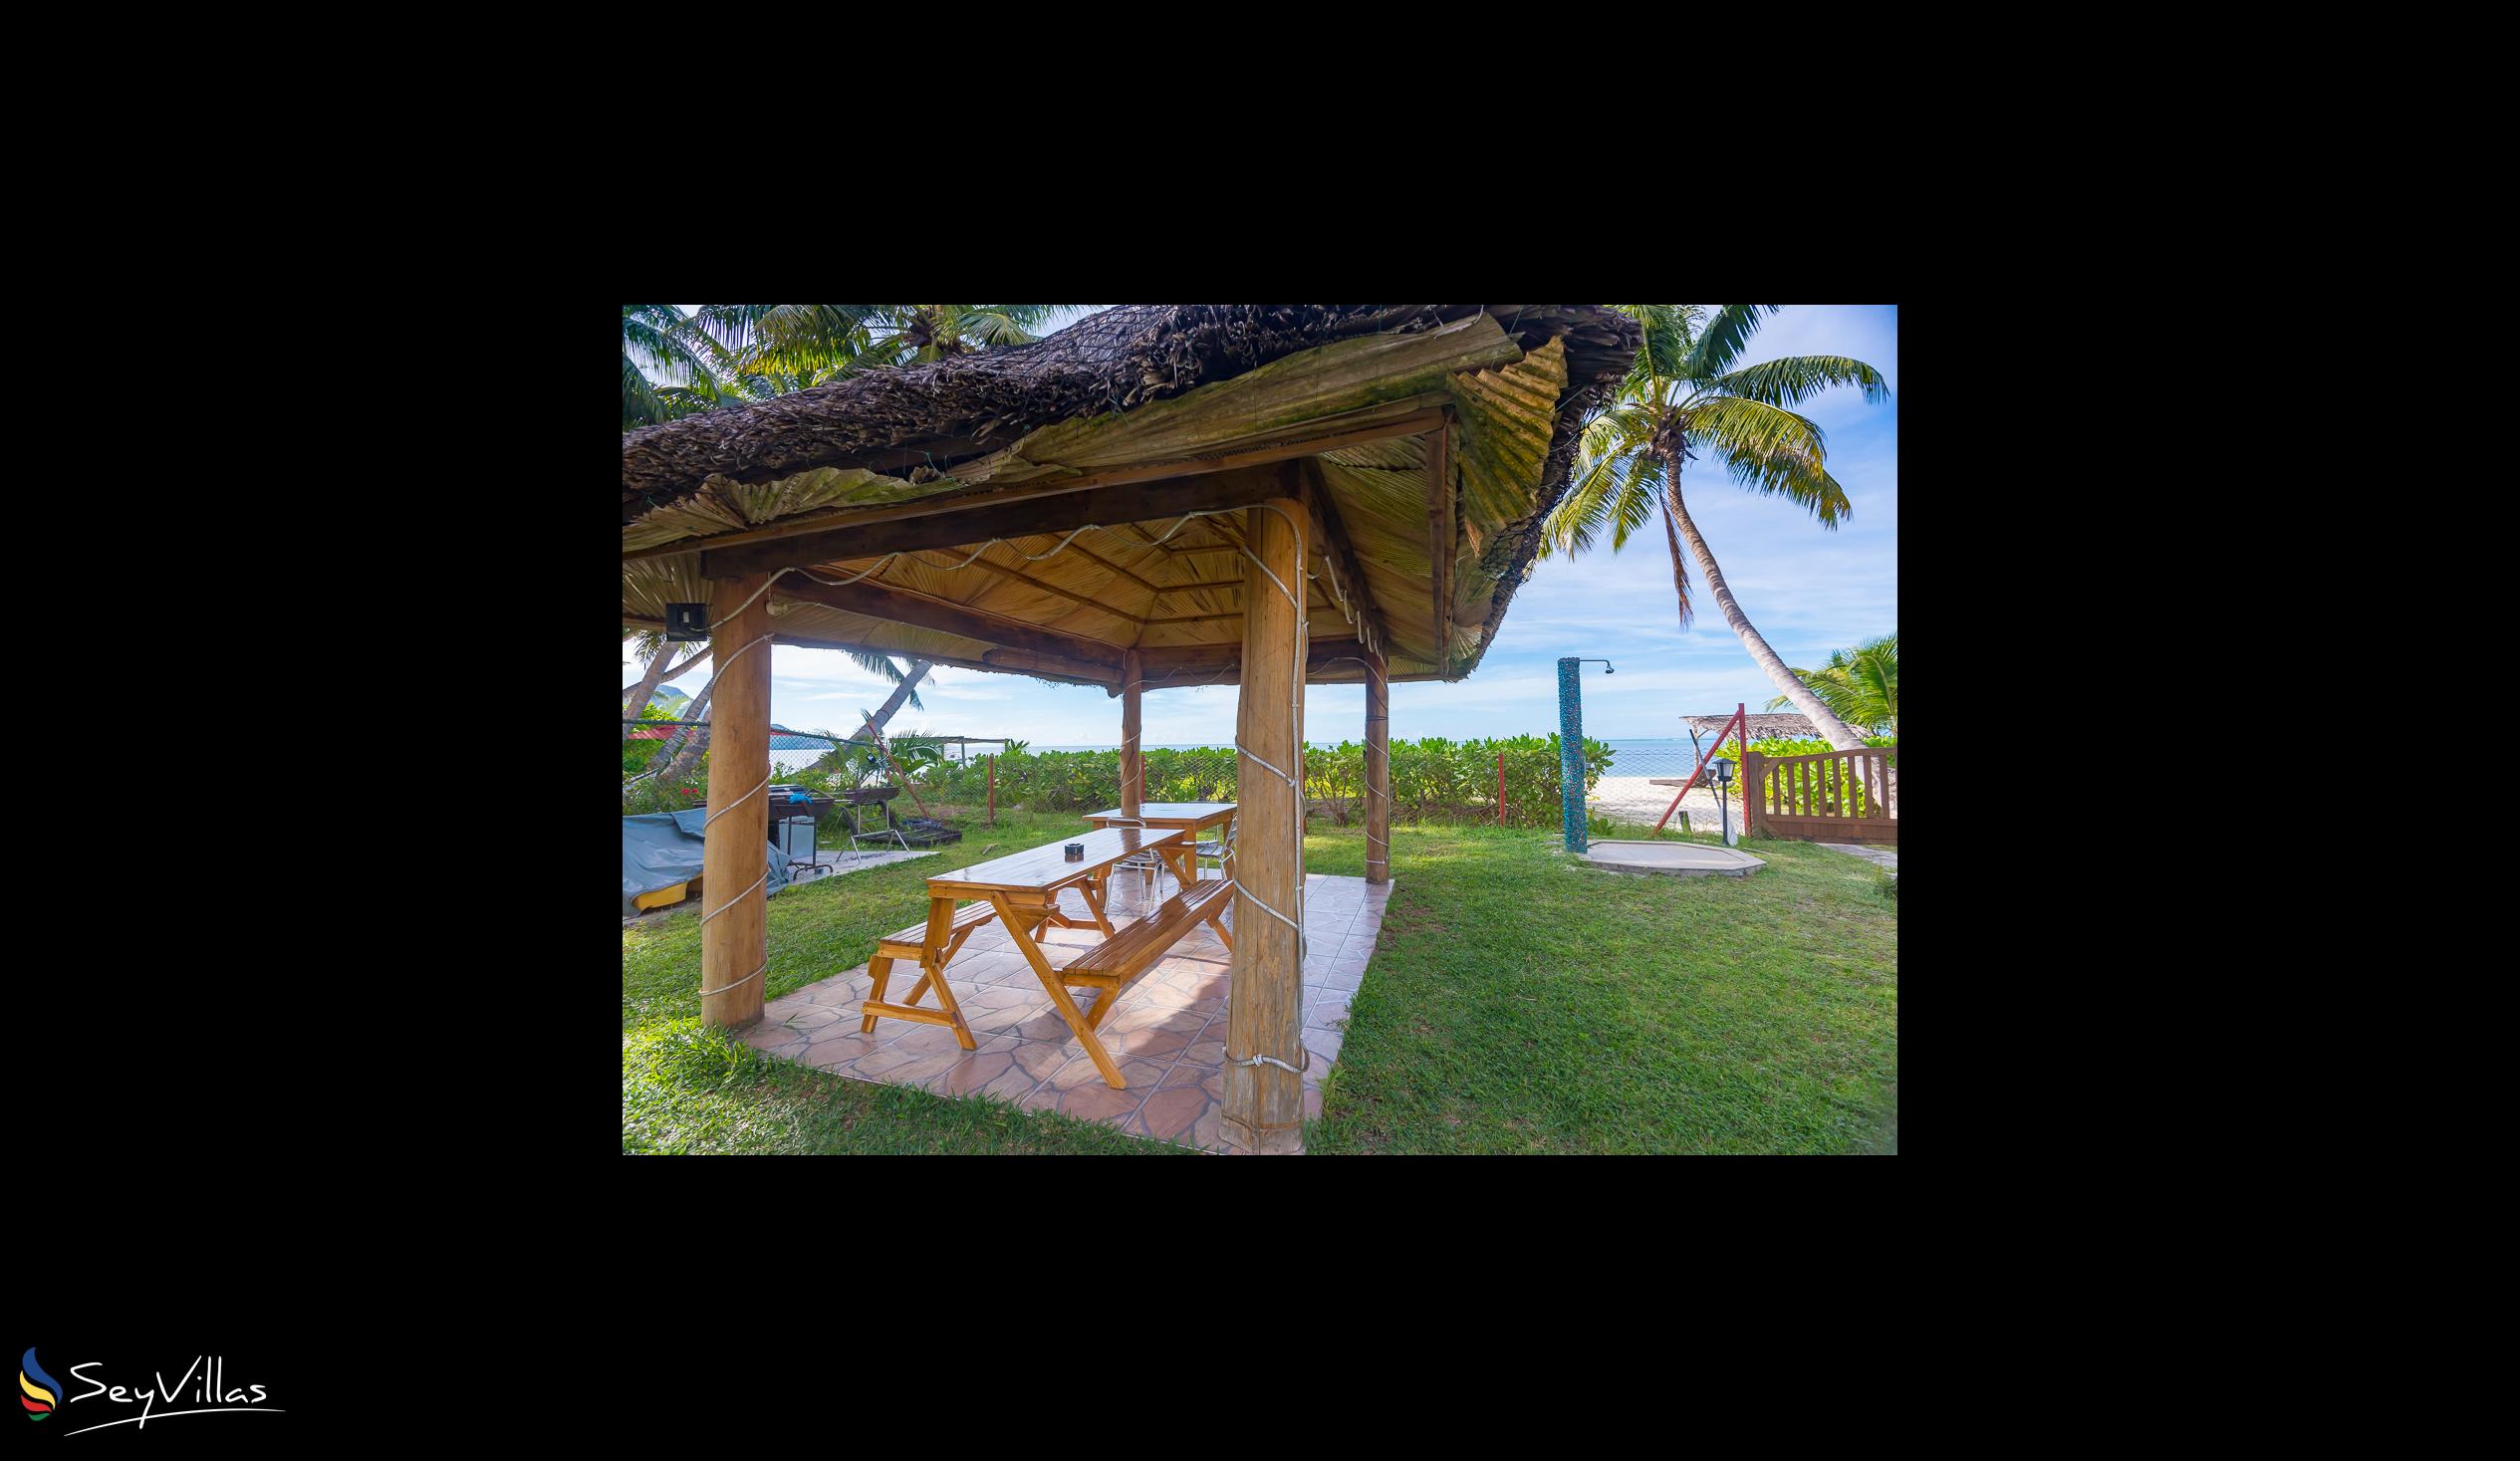 Foto 28: Le Tropique - Aussenbereich - Praslin (Seychellen)